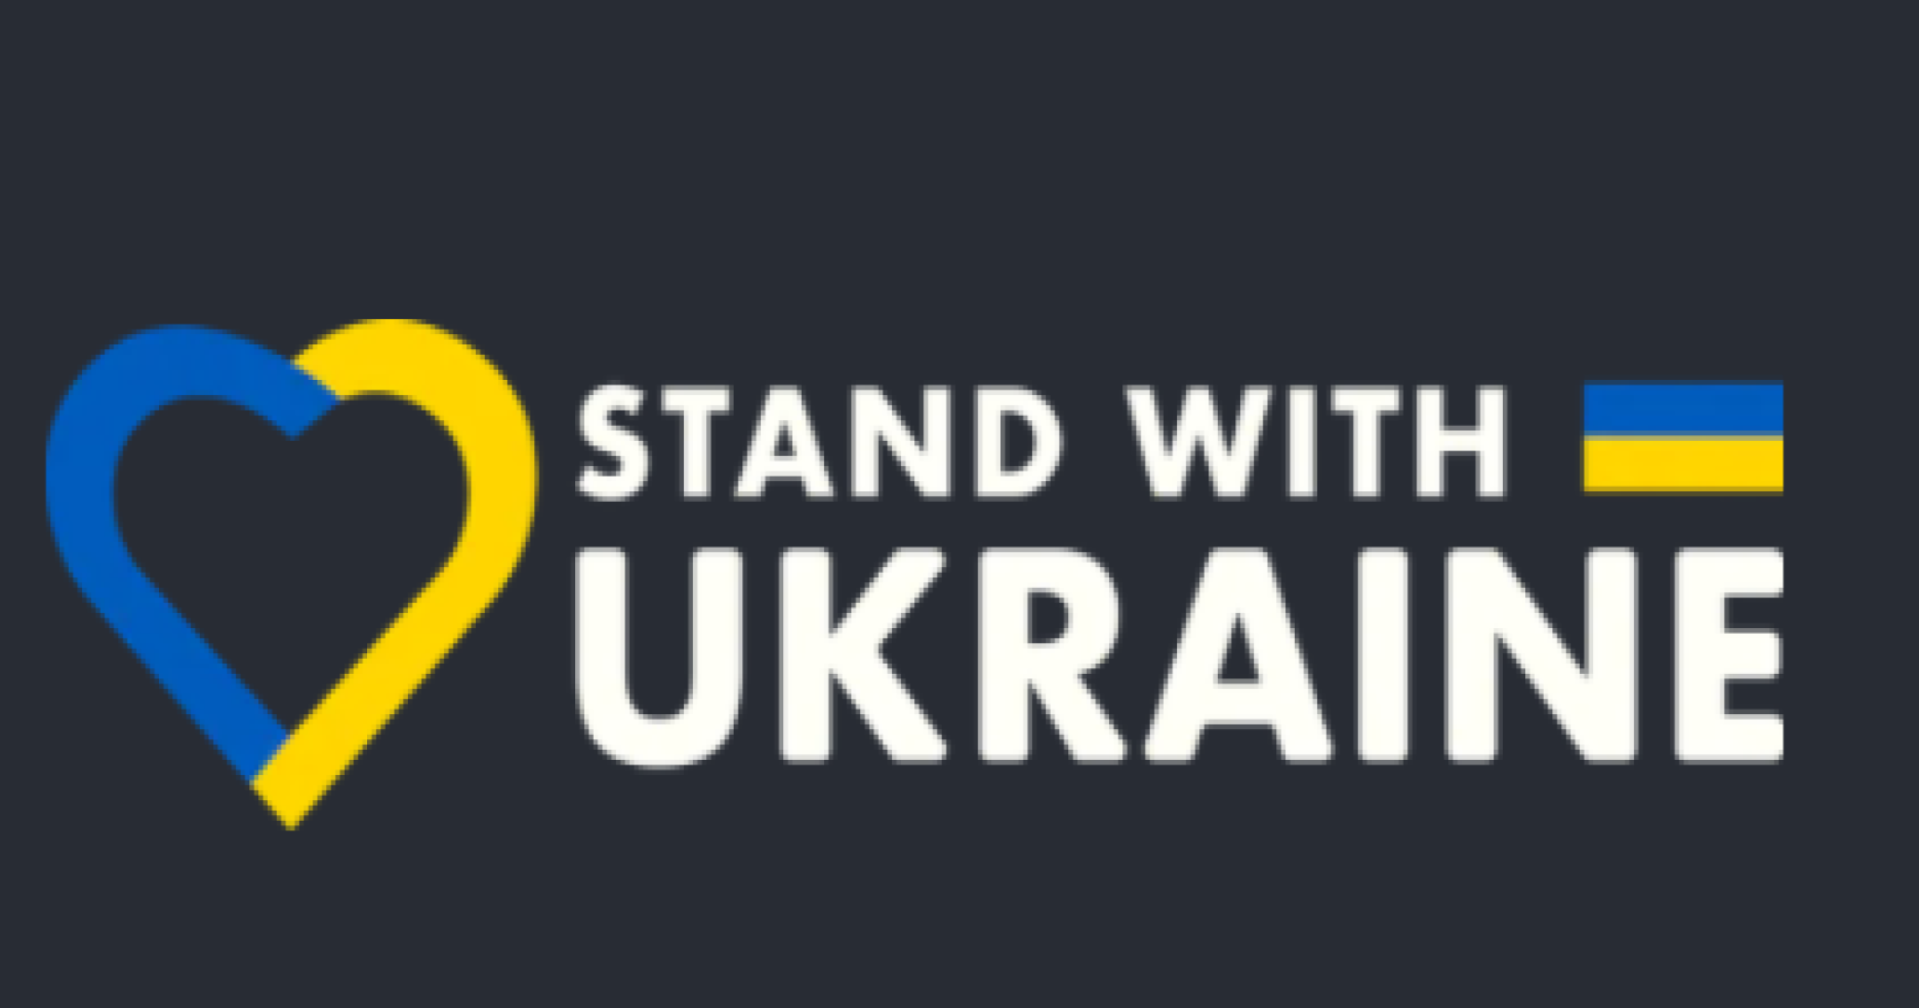 บันเดิลสนับสนุนยูเครนของ Humble ทำได้รายได้เกือบ 5 ล้านเหรียญแล้ว